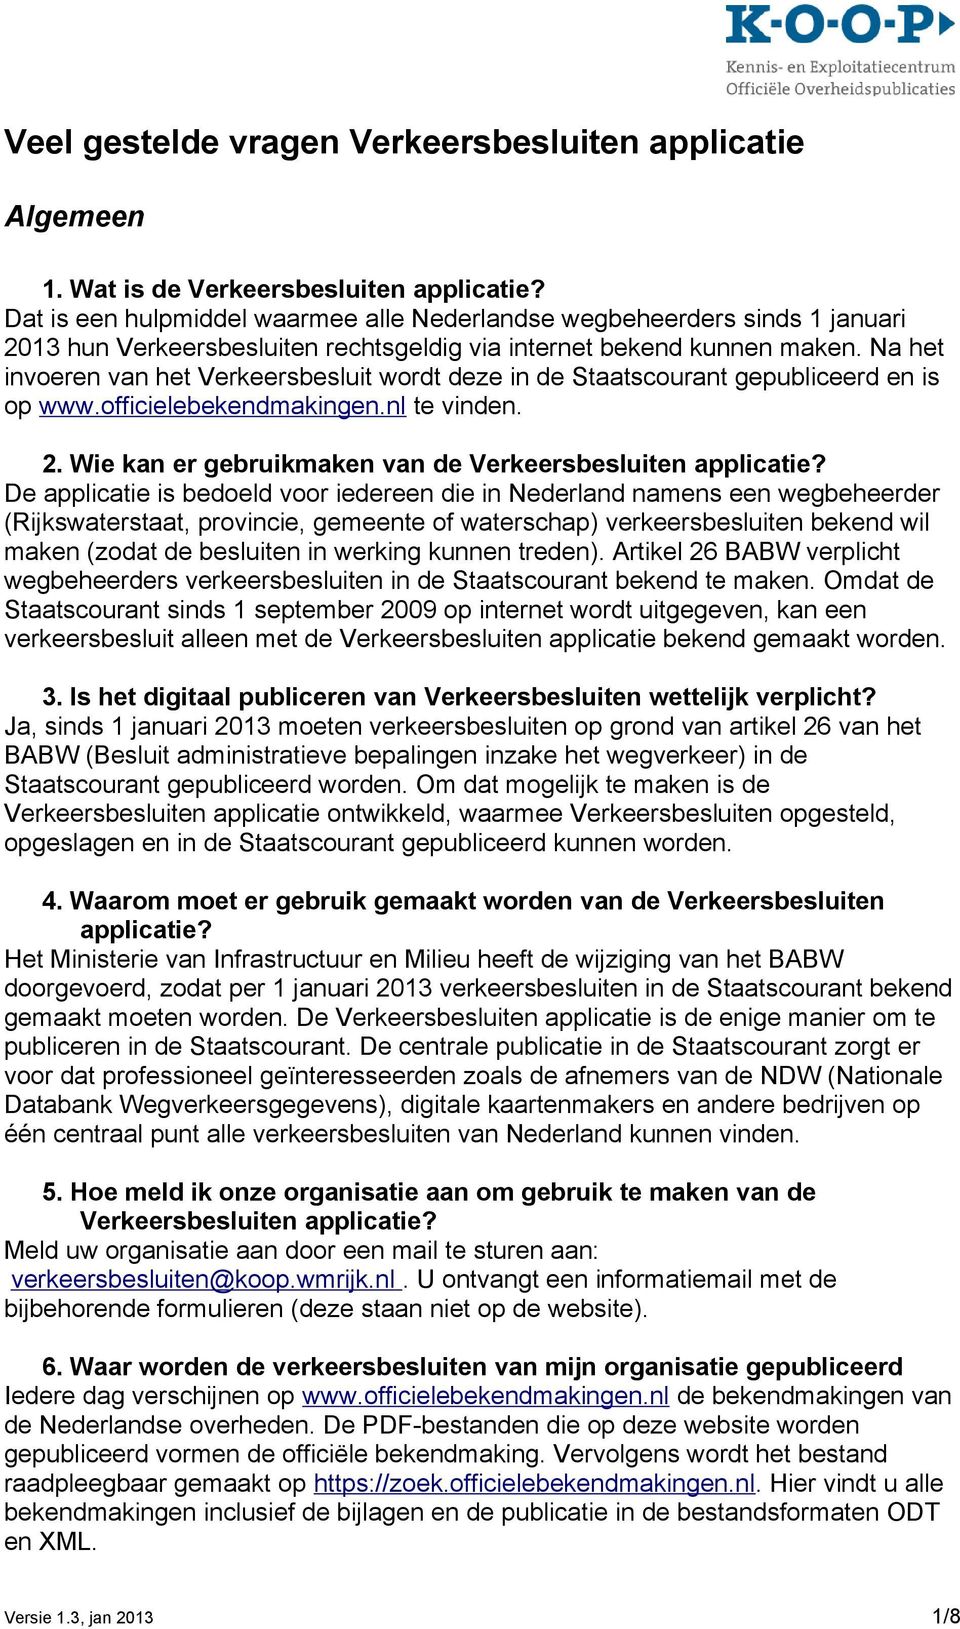 Na het invoeren van het Verkeersbesluit wordt deze in de Staatscourant gepubliceerd en is op www.officielebekendmakingen.nl te vinden. 2. Wie kan er gebruikmaken van de Verkeersbesluiten applicatie?